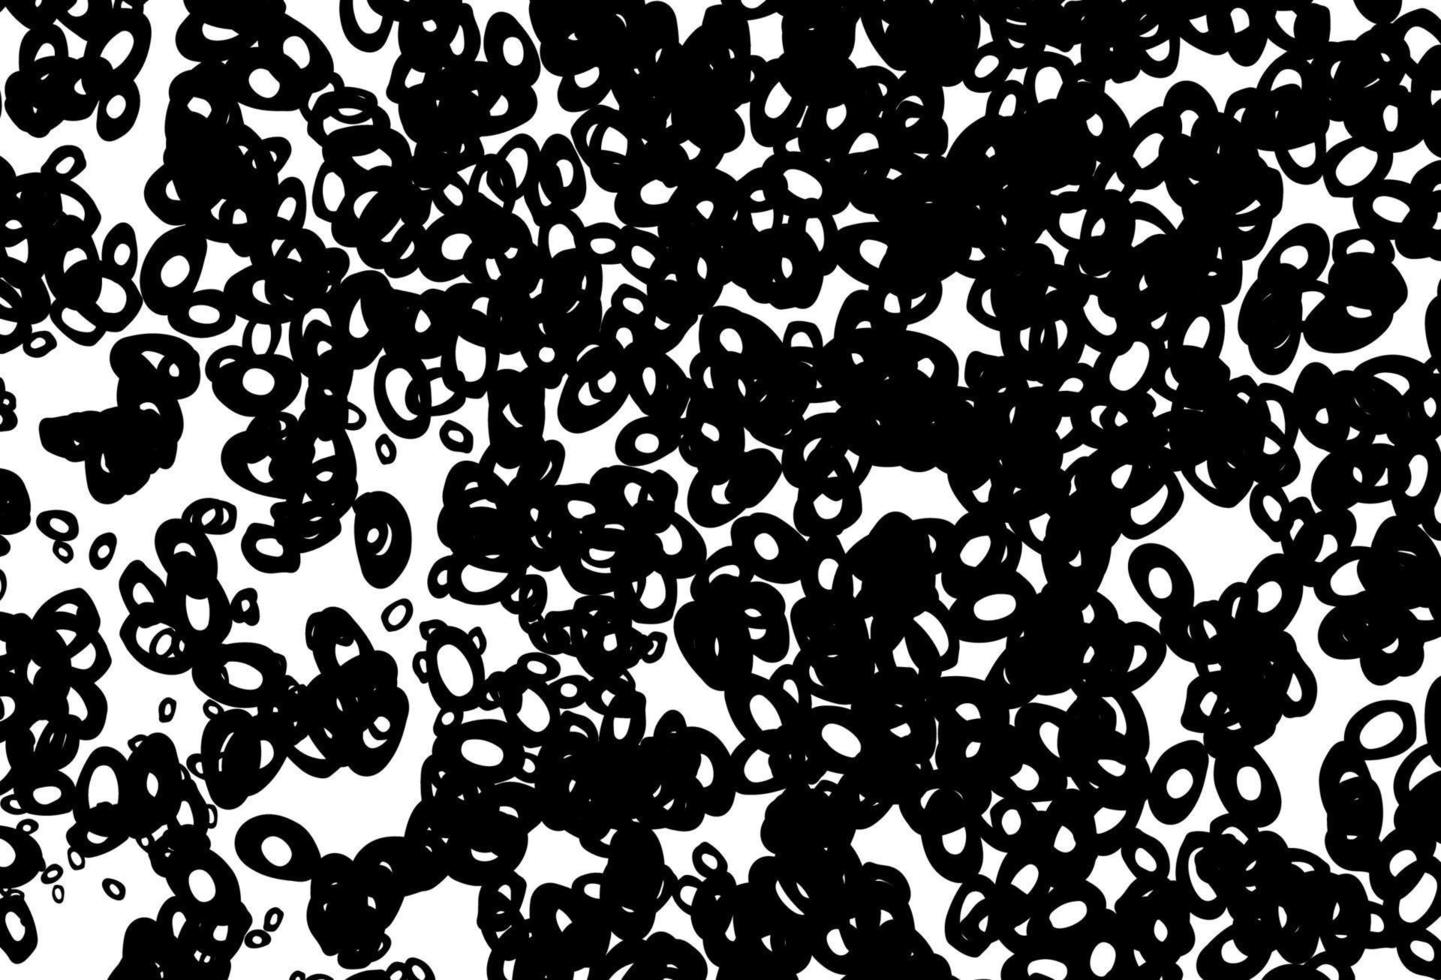 texture vettoriale in bianco e nero con dischi.